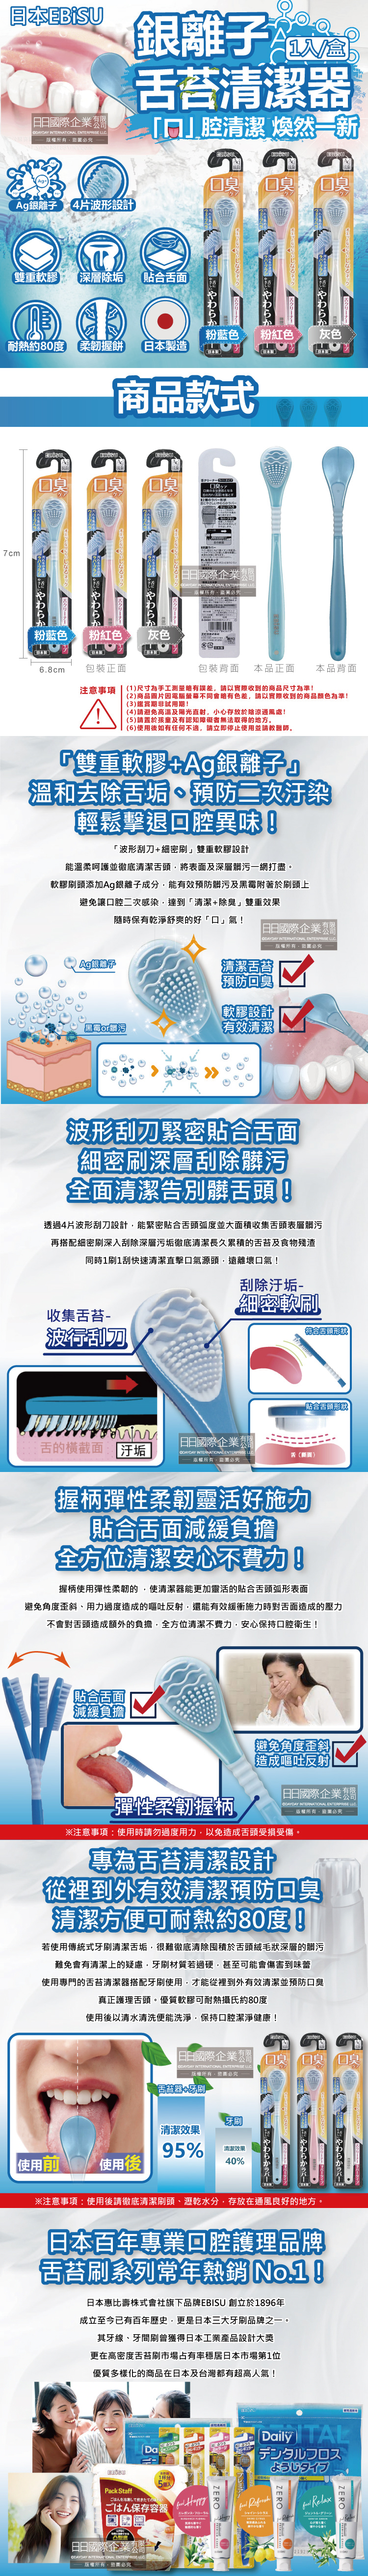 (清潔-美妝)日本ebisu-Ag+銀離子舌苔清潔棒1入盒裝介紹圖